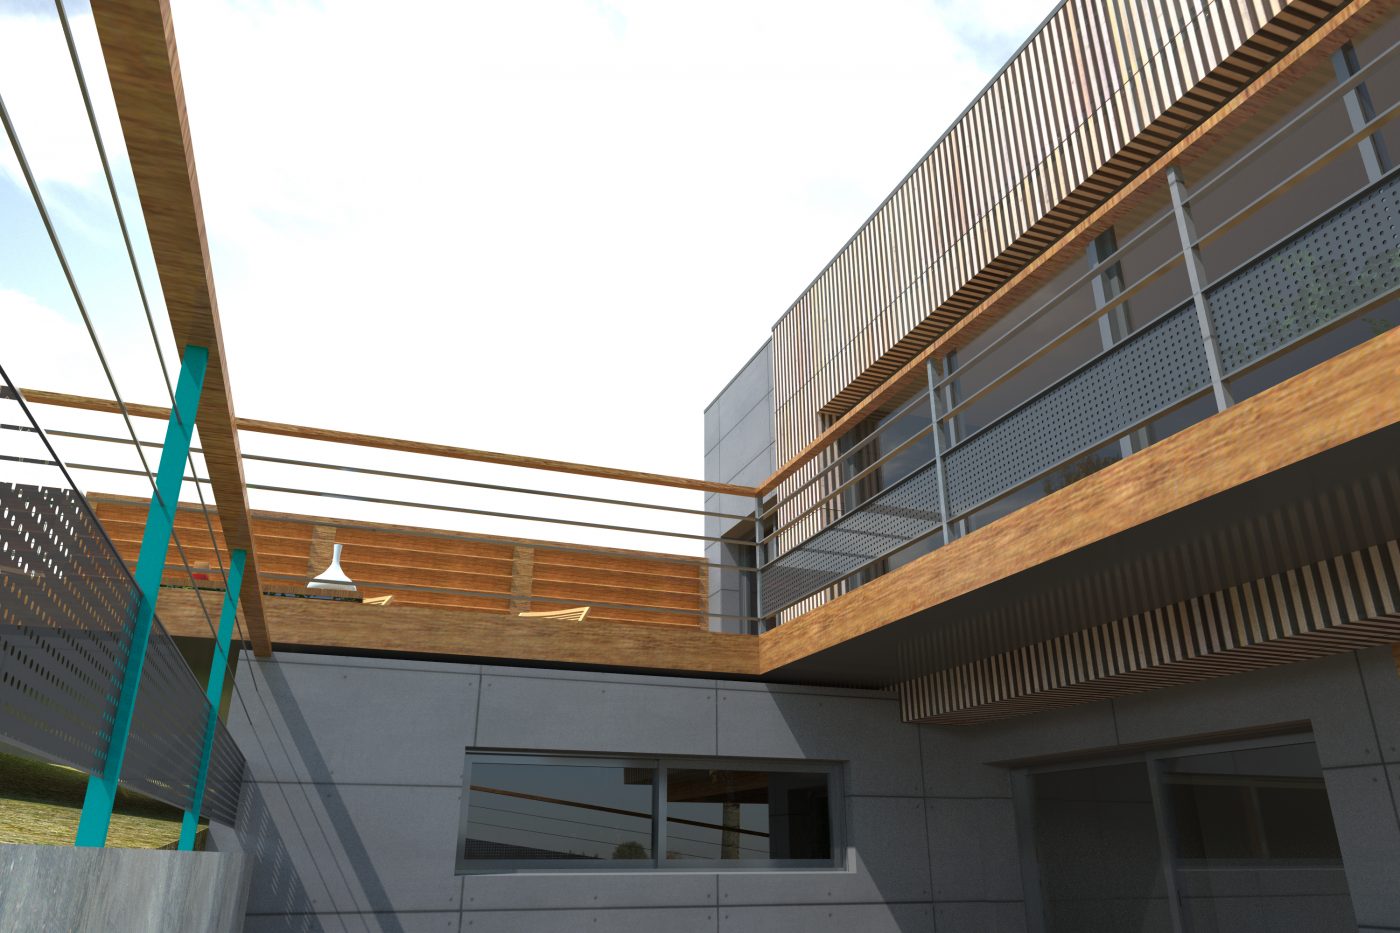 Philippe_Zerbib_Architecte_construction_maisons_ossature_bois_projet_maison_Amozigh_View 0_18